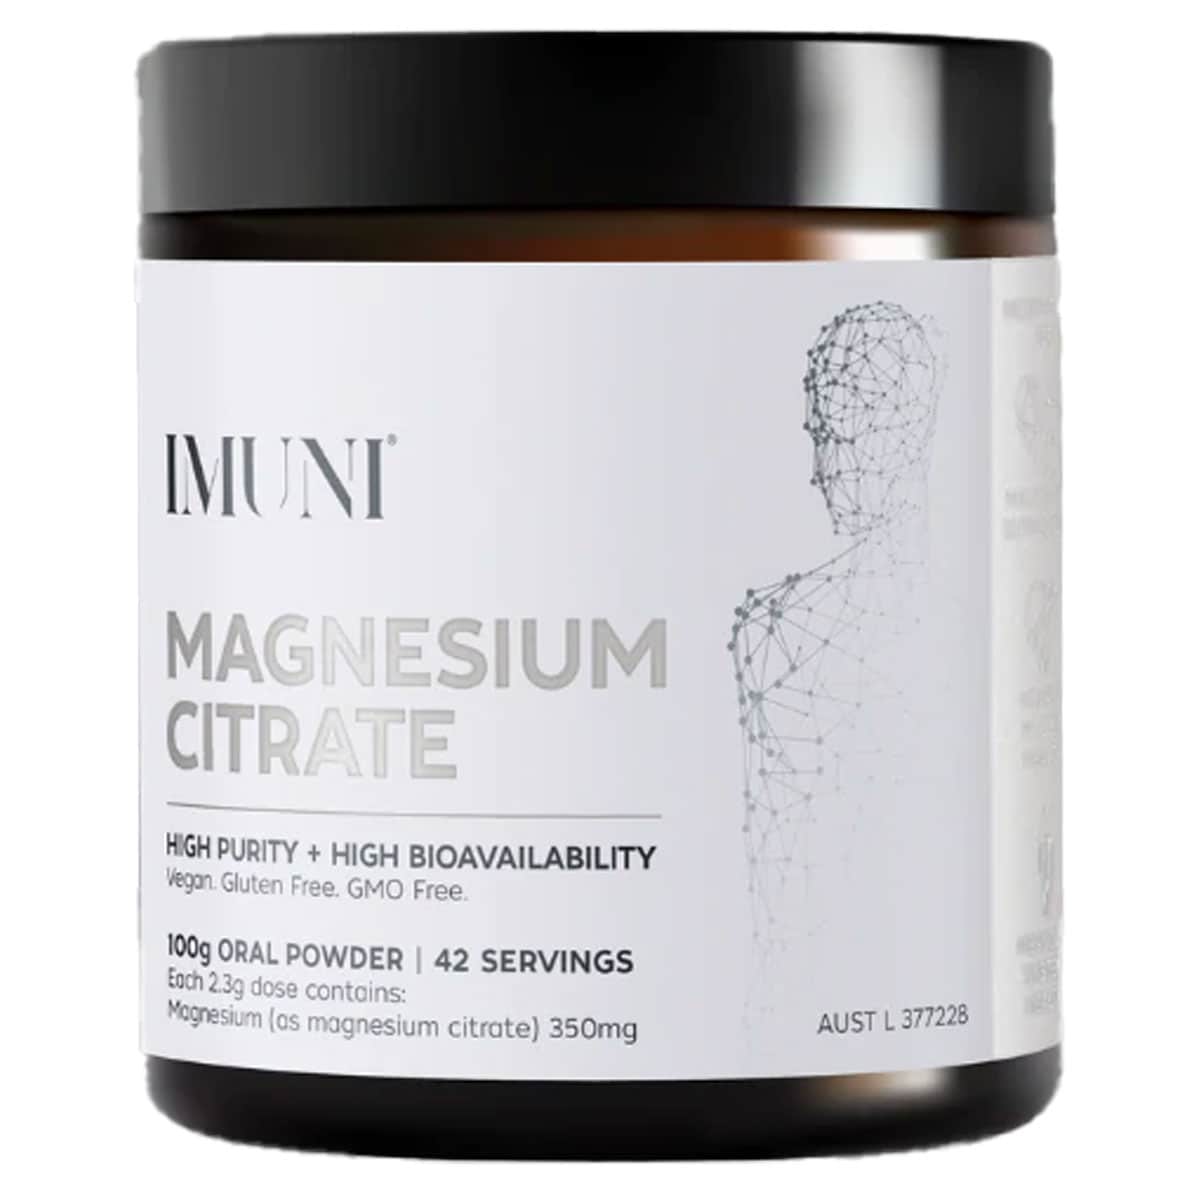 IMUNI Magnesium Citrate Powder 100g Australia